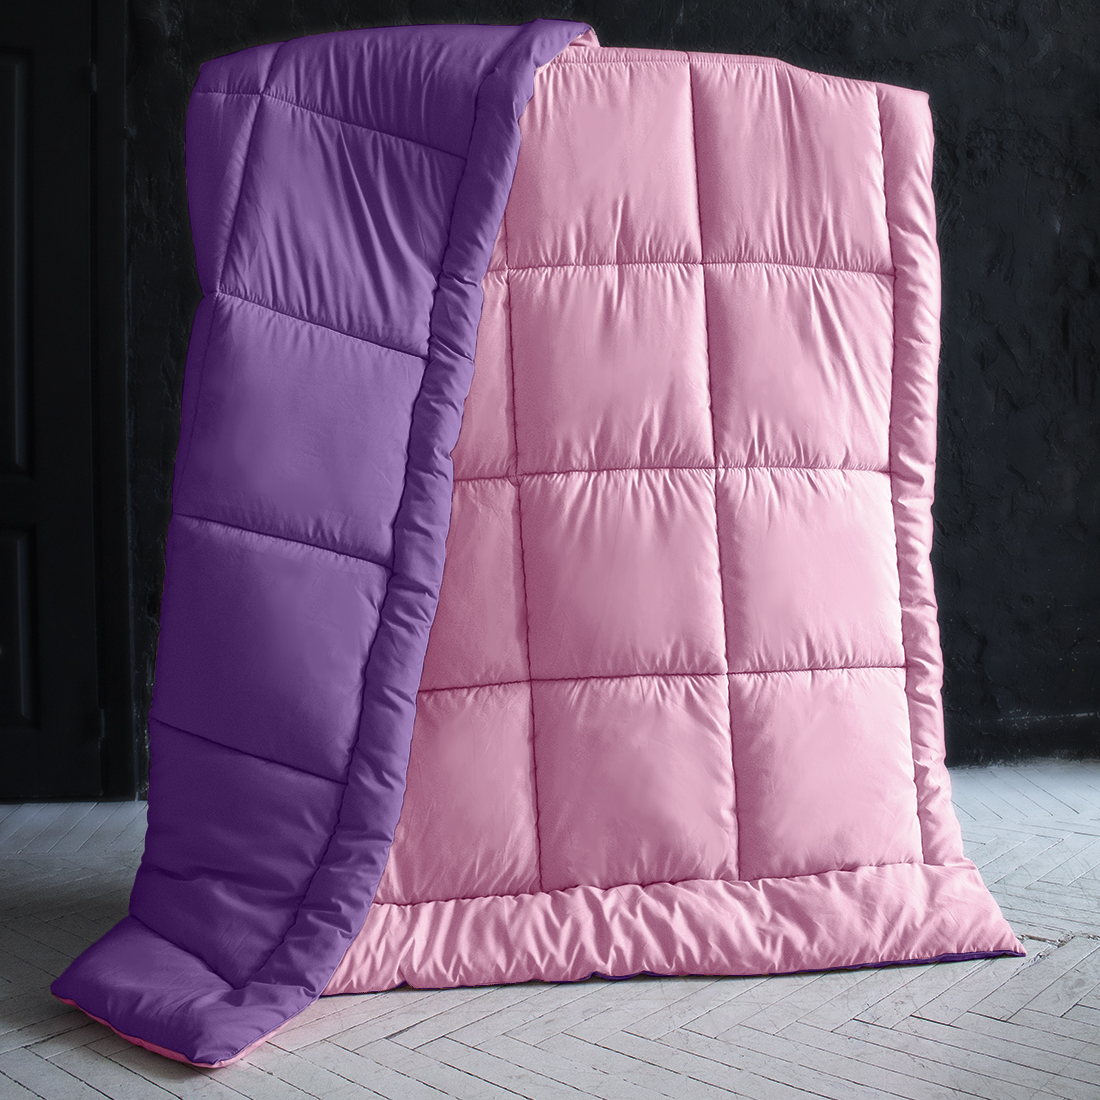 Одеяло MultiColor цвет: сиреневый, темно-фиолетовый (200х220 см), размер 200х220 см pva410852 Одеяло MultiColor цвет: сиреневый, темно-фиолетовый (200х220 см) - фото 1